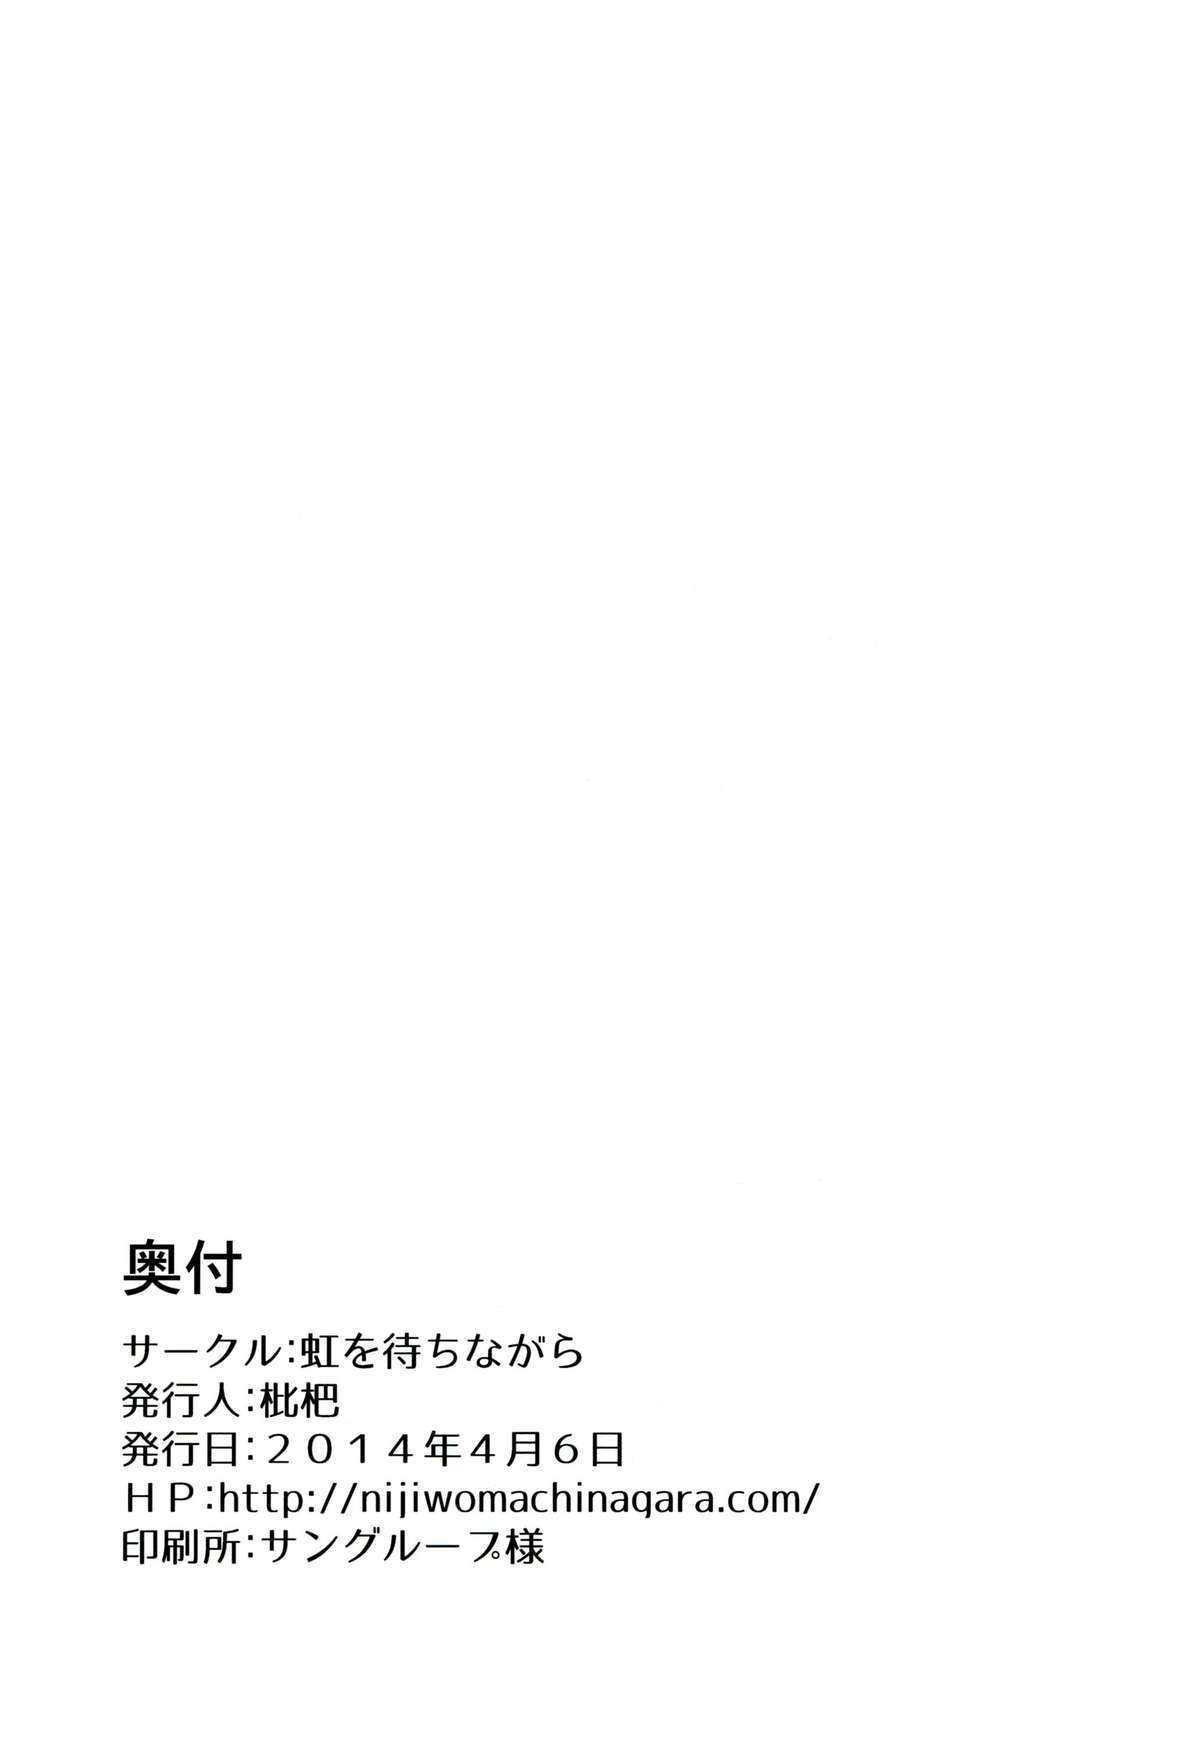 (学園トライアル5) [虹を待ちながら (枇杷)] 環状オクラホマミキサー3 (スーパーダンガンロンパ2)